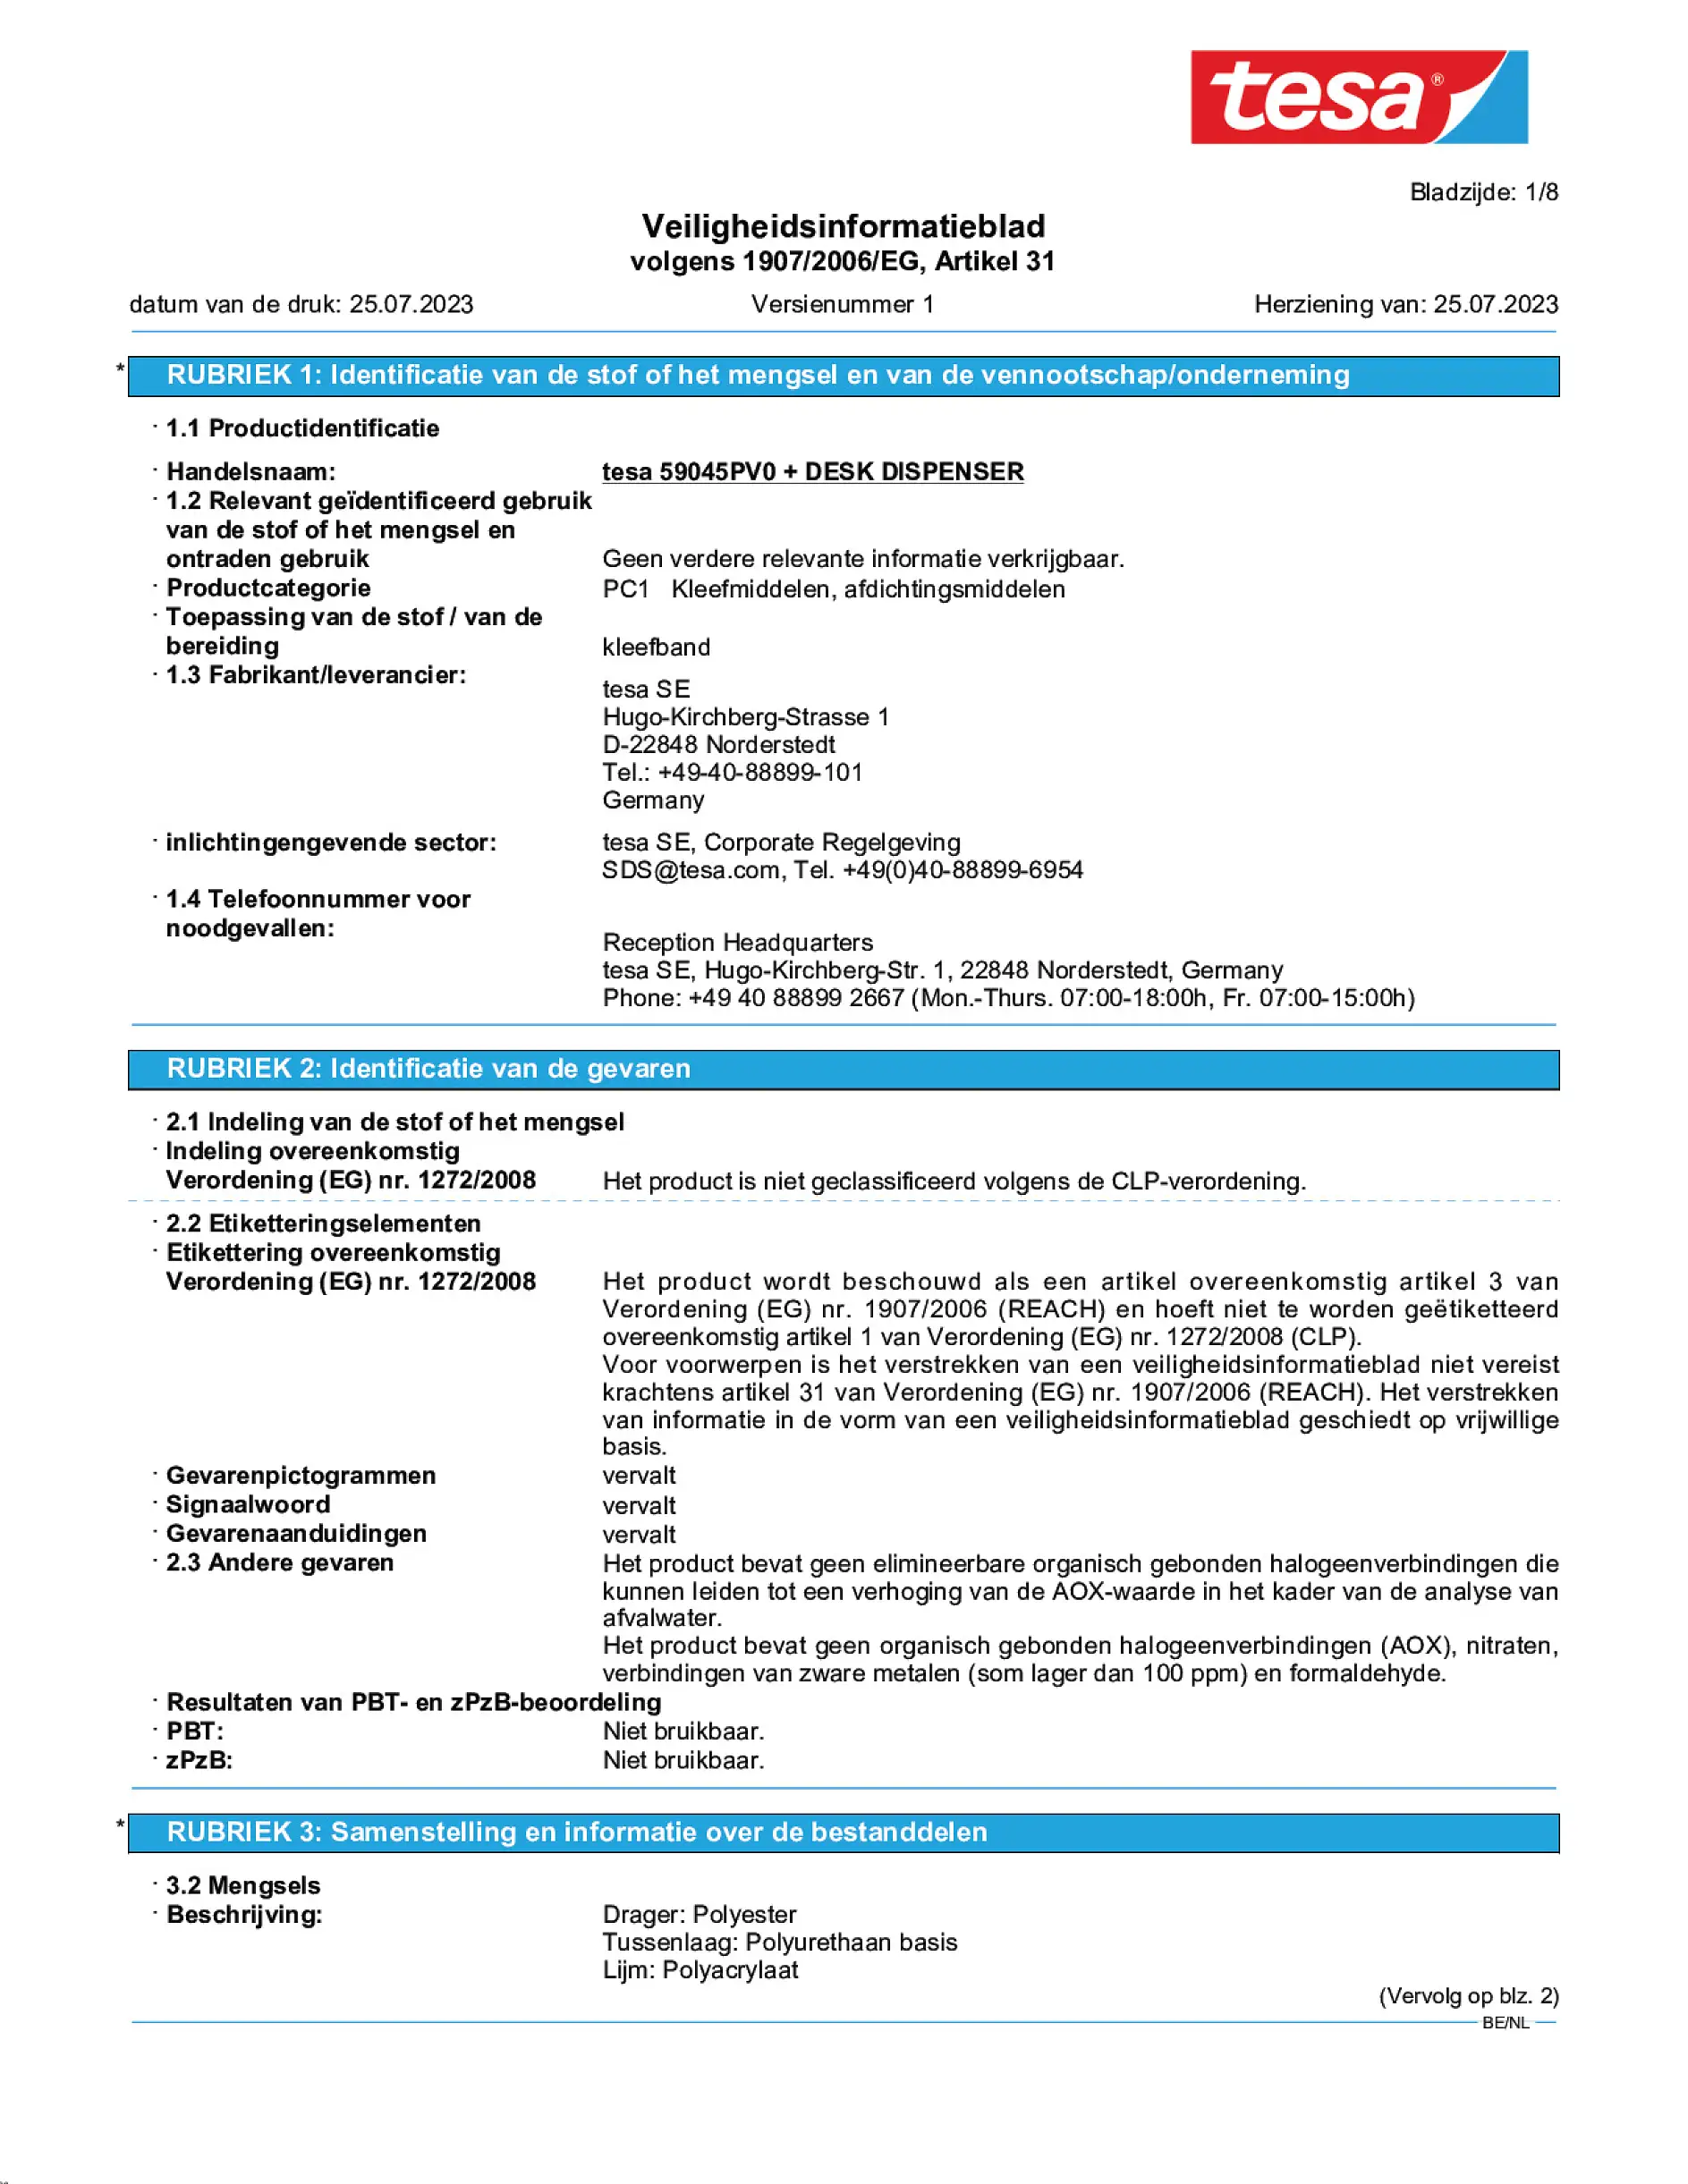 Safety data sheet_tesafilm® 59045_nl-BE_v1